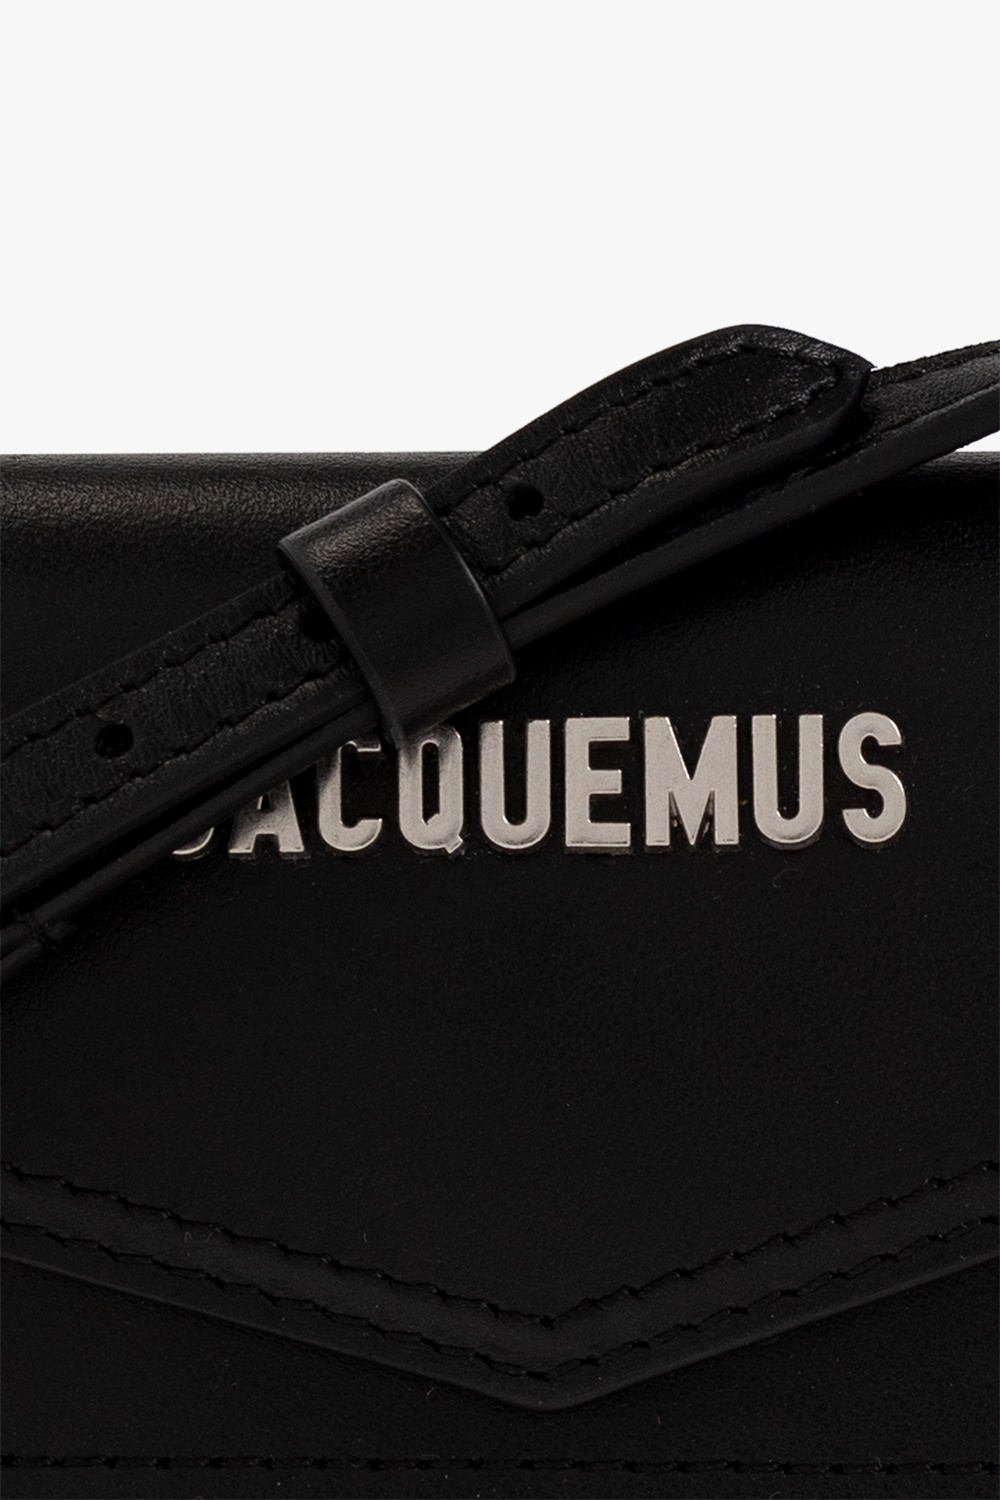 Le Porte Azur' strapped card case Jacquemus - EdifactoryShops Peru